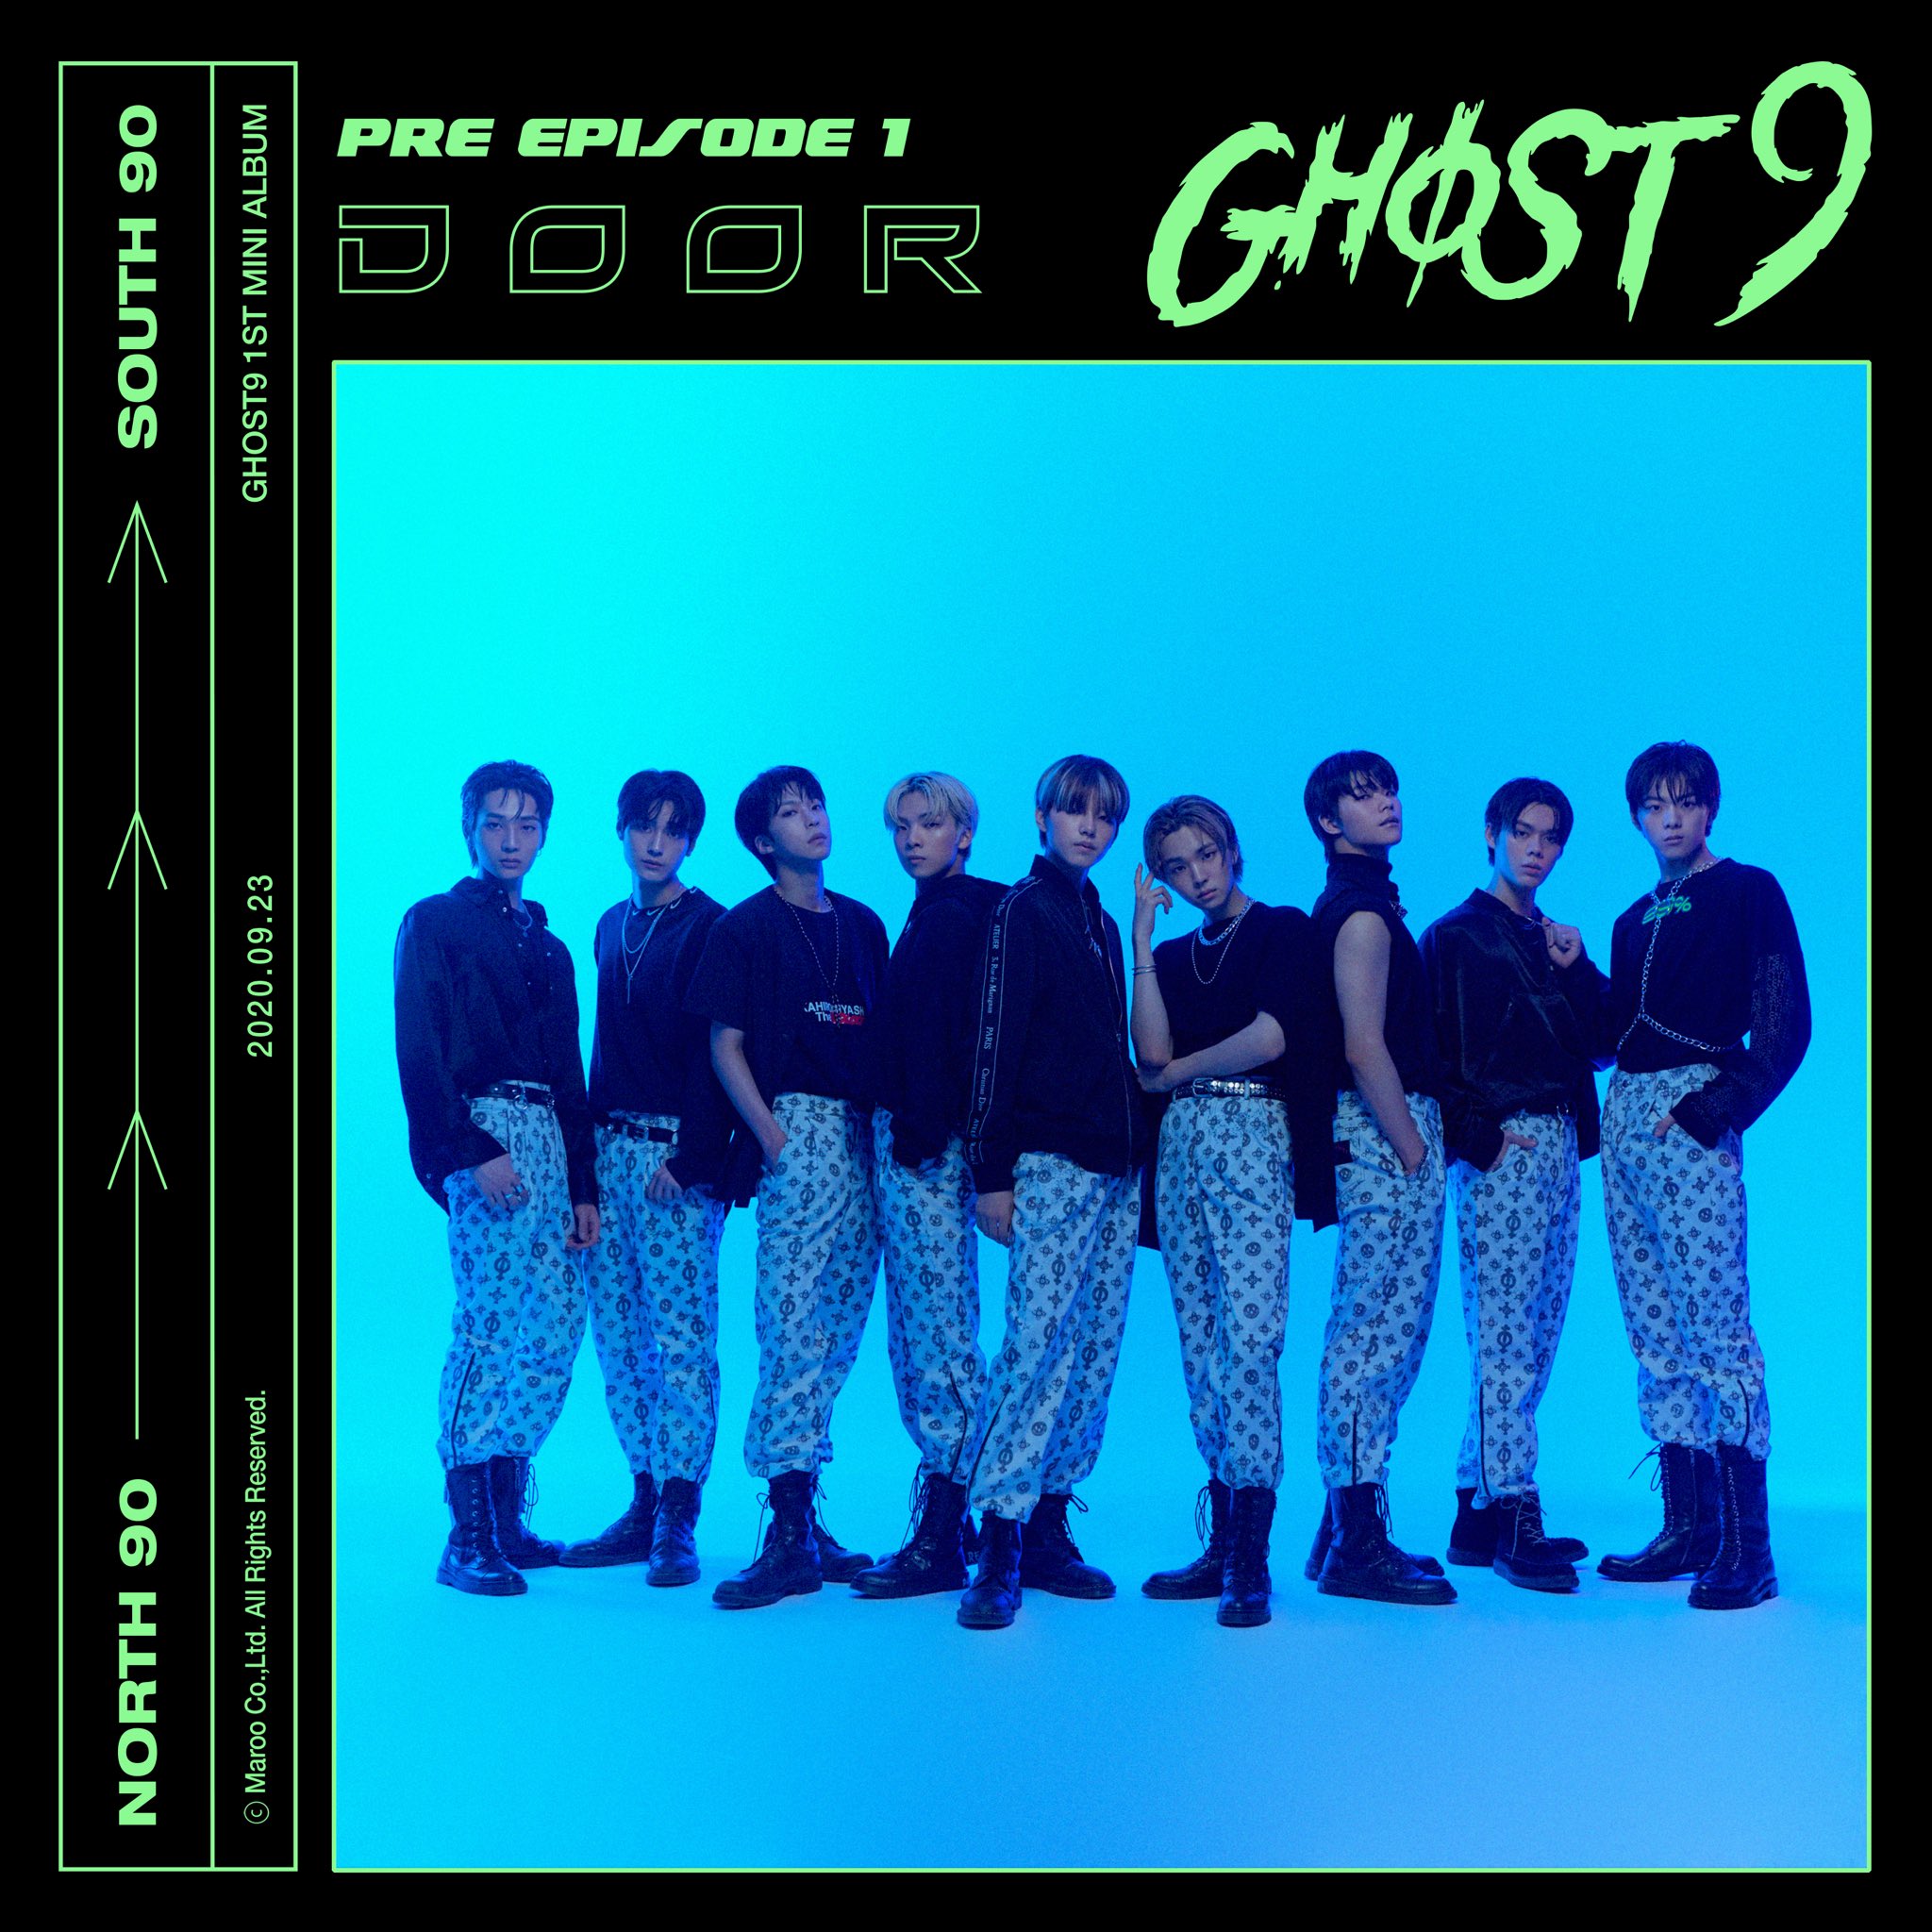 ghost9-announces-debut-schedule-with-first-album-pre-episode-1-door-1